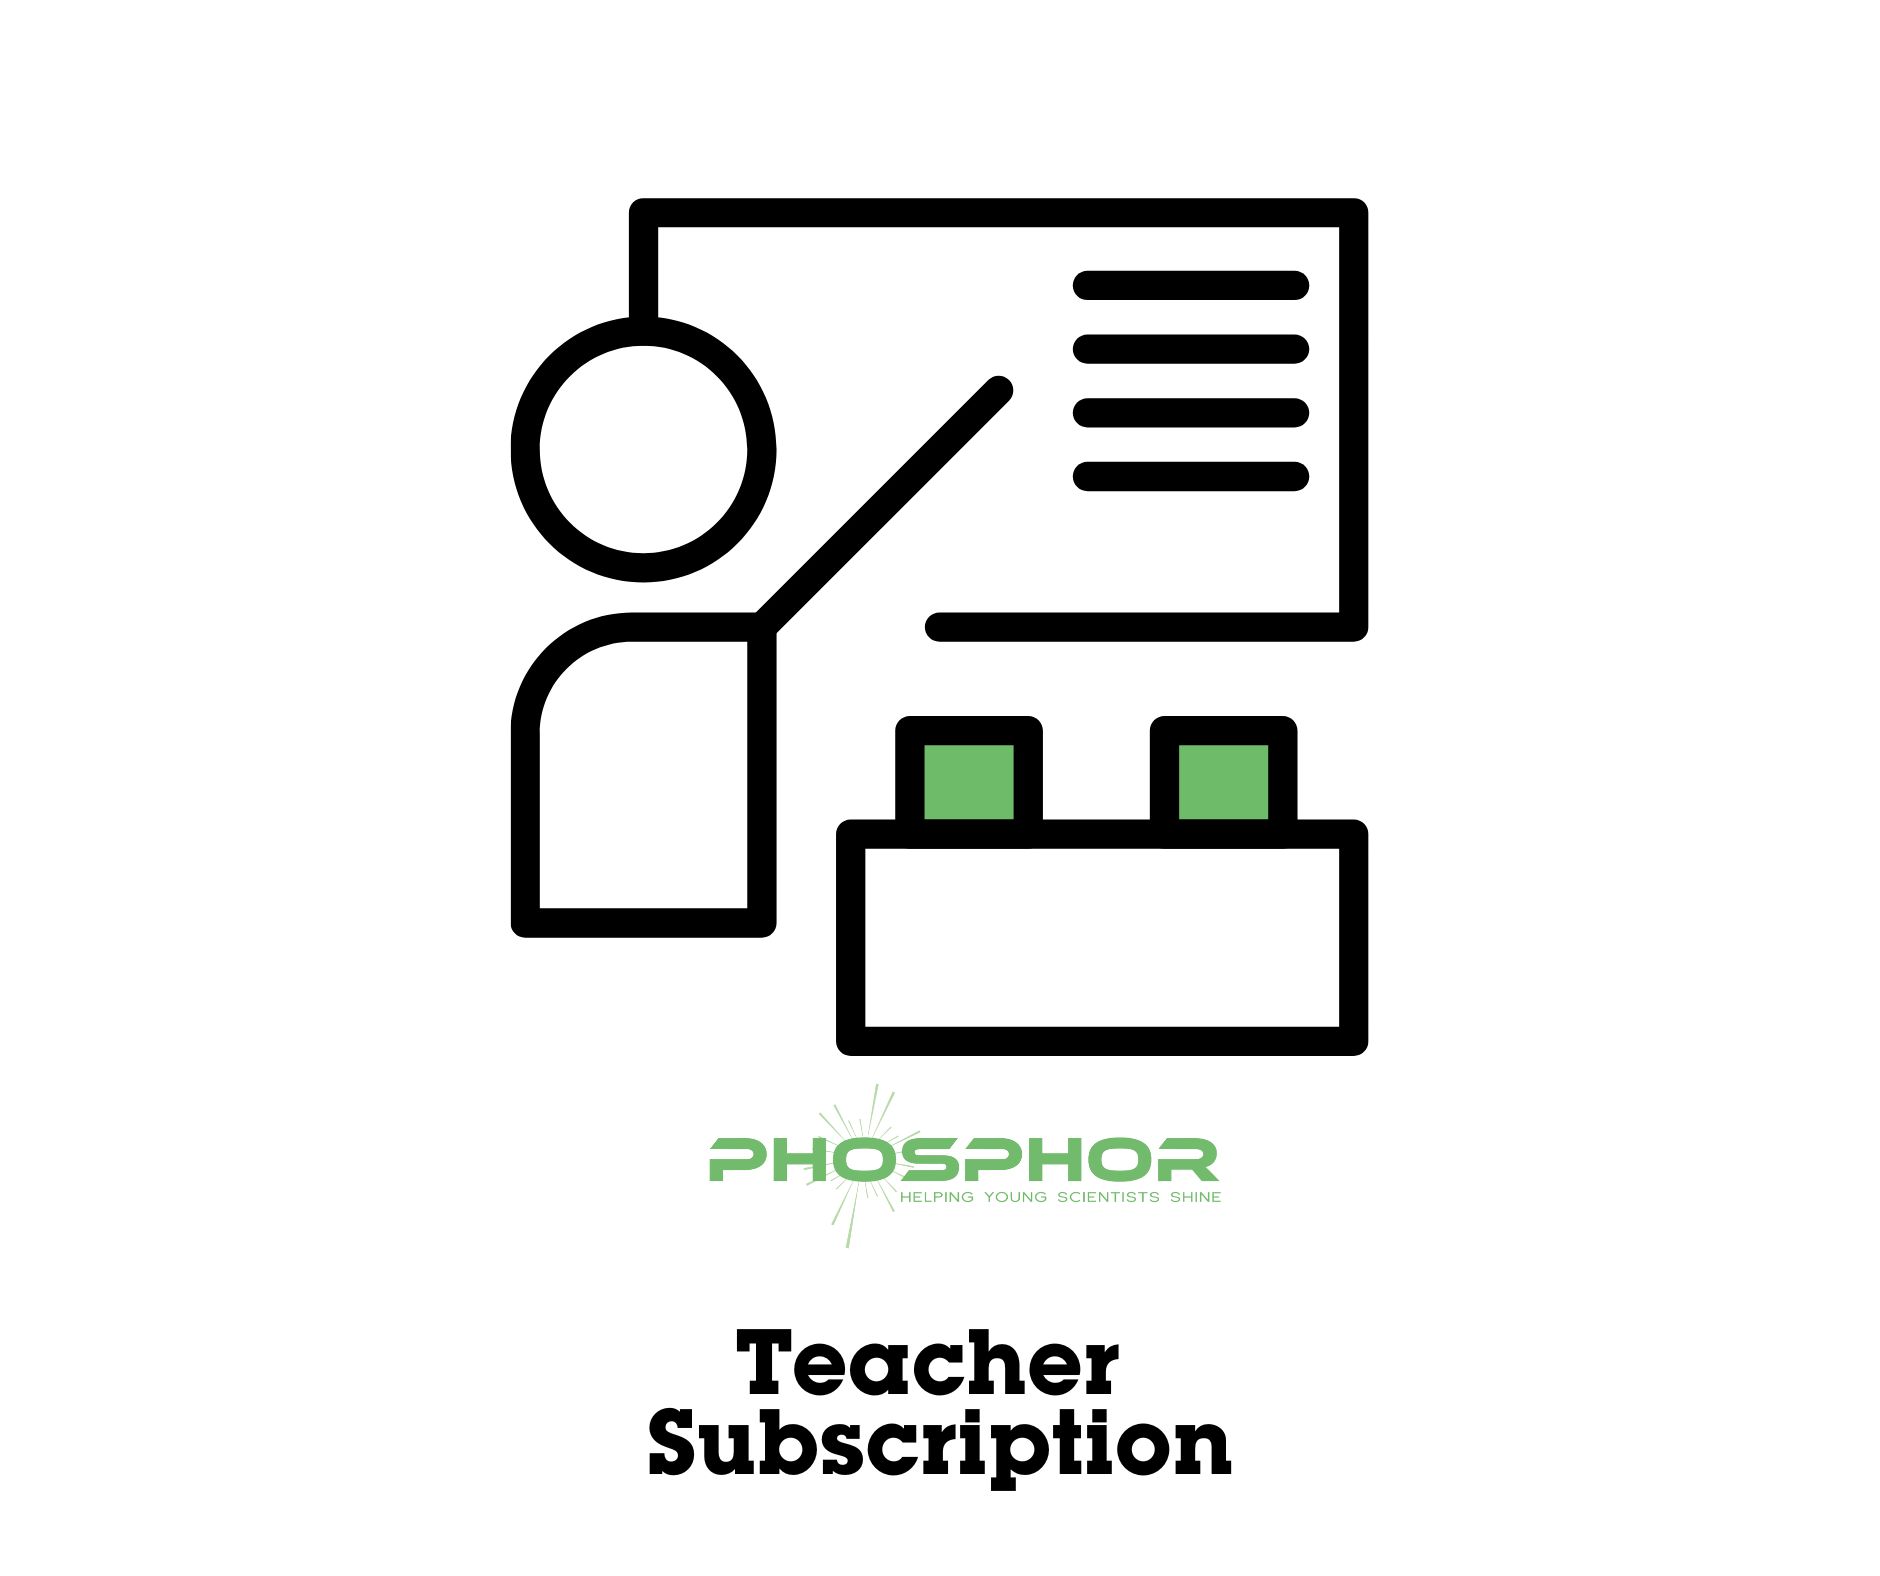 Phosphor teacher subscription